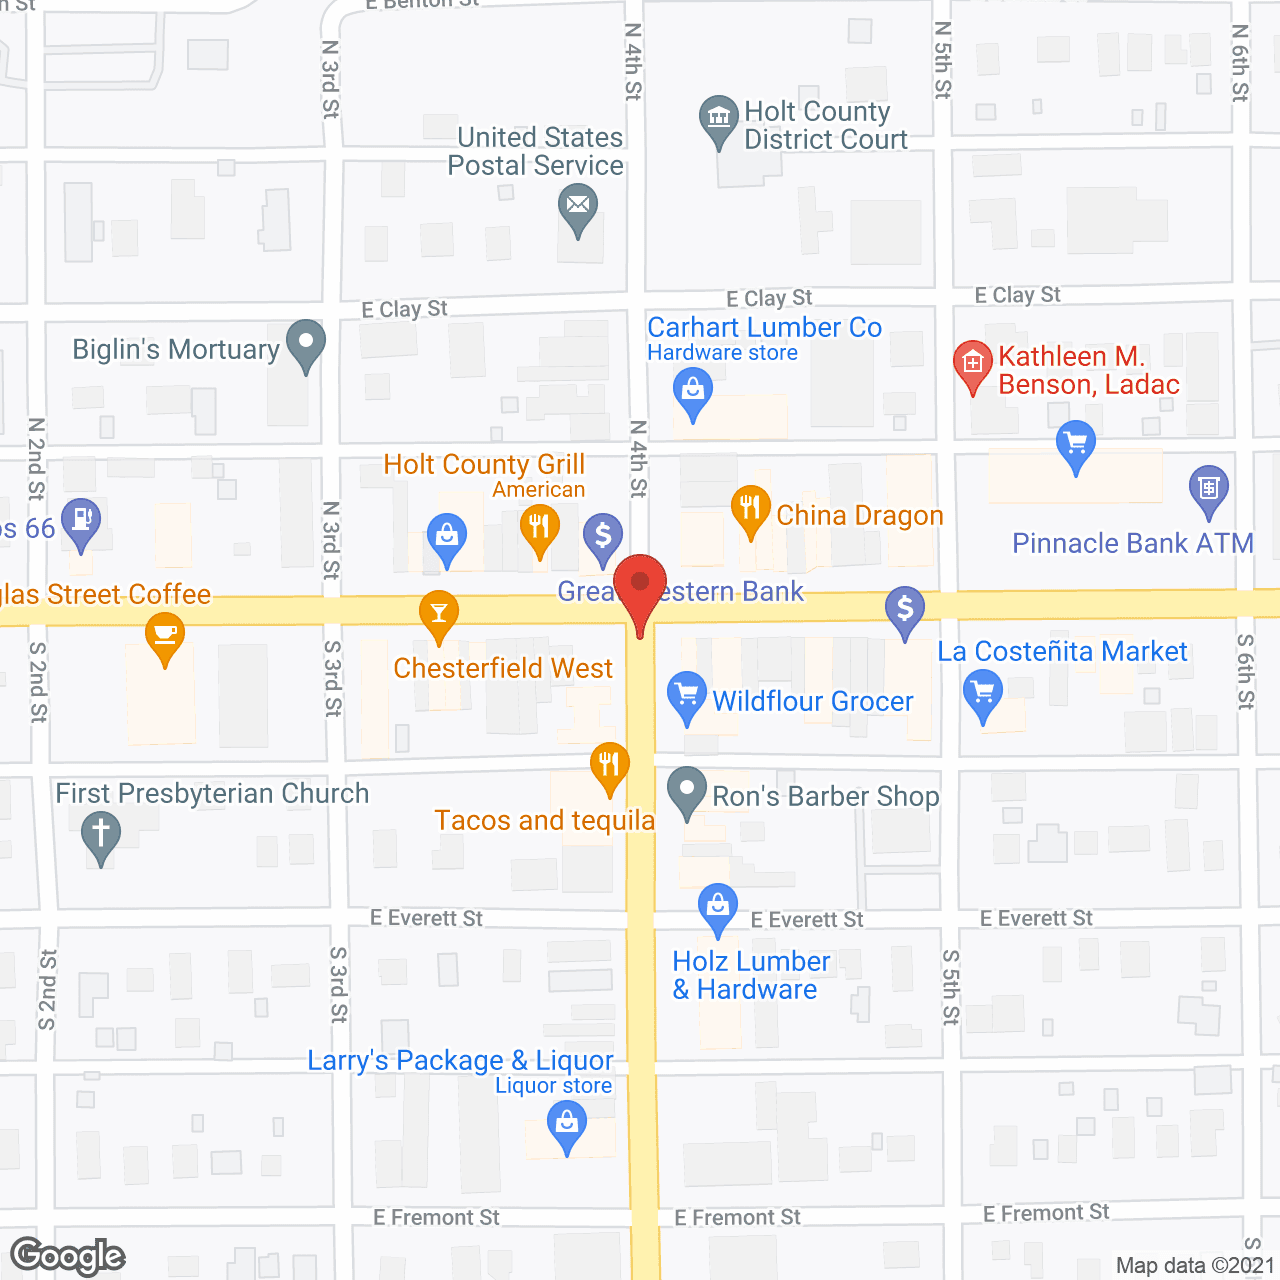 Golden LivingCenter - O'Neill in google map